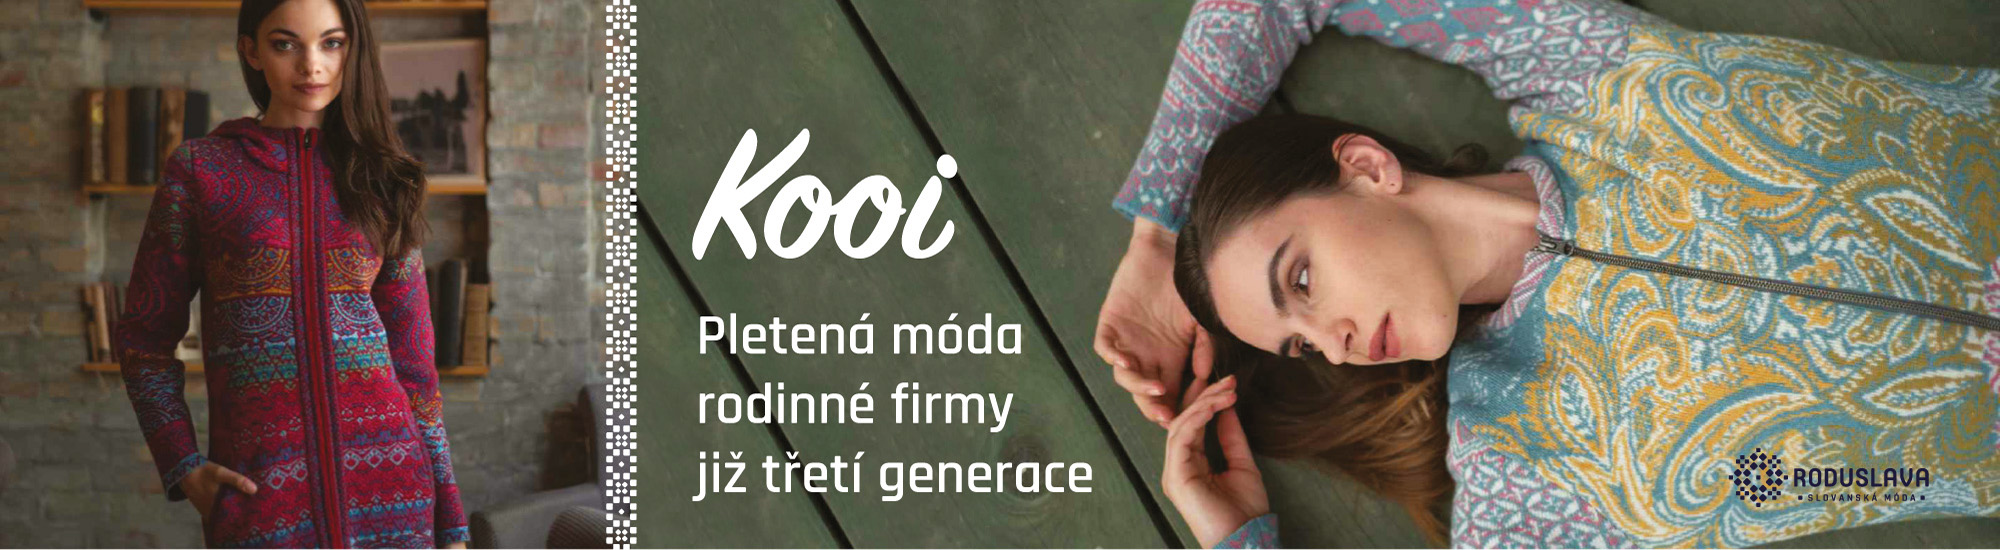 Limitovaná edice pletené módy Kooi